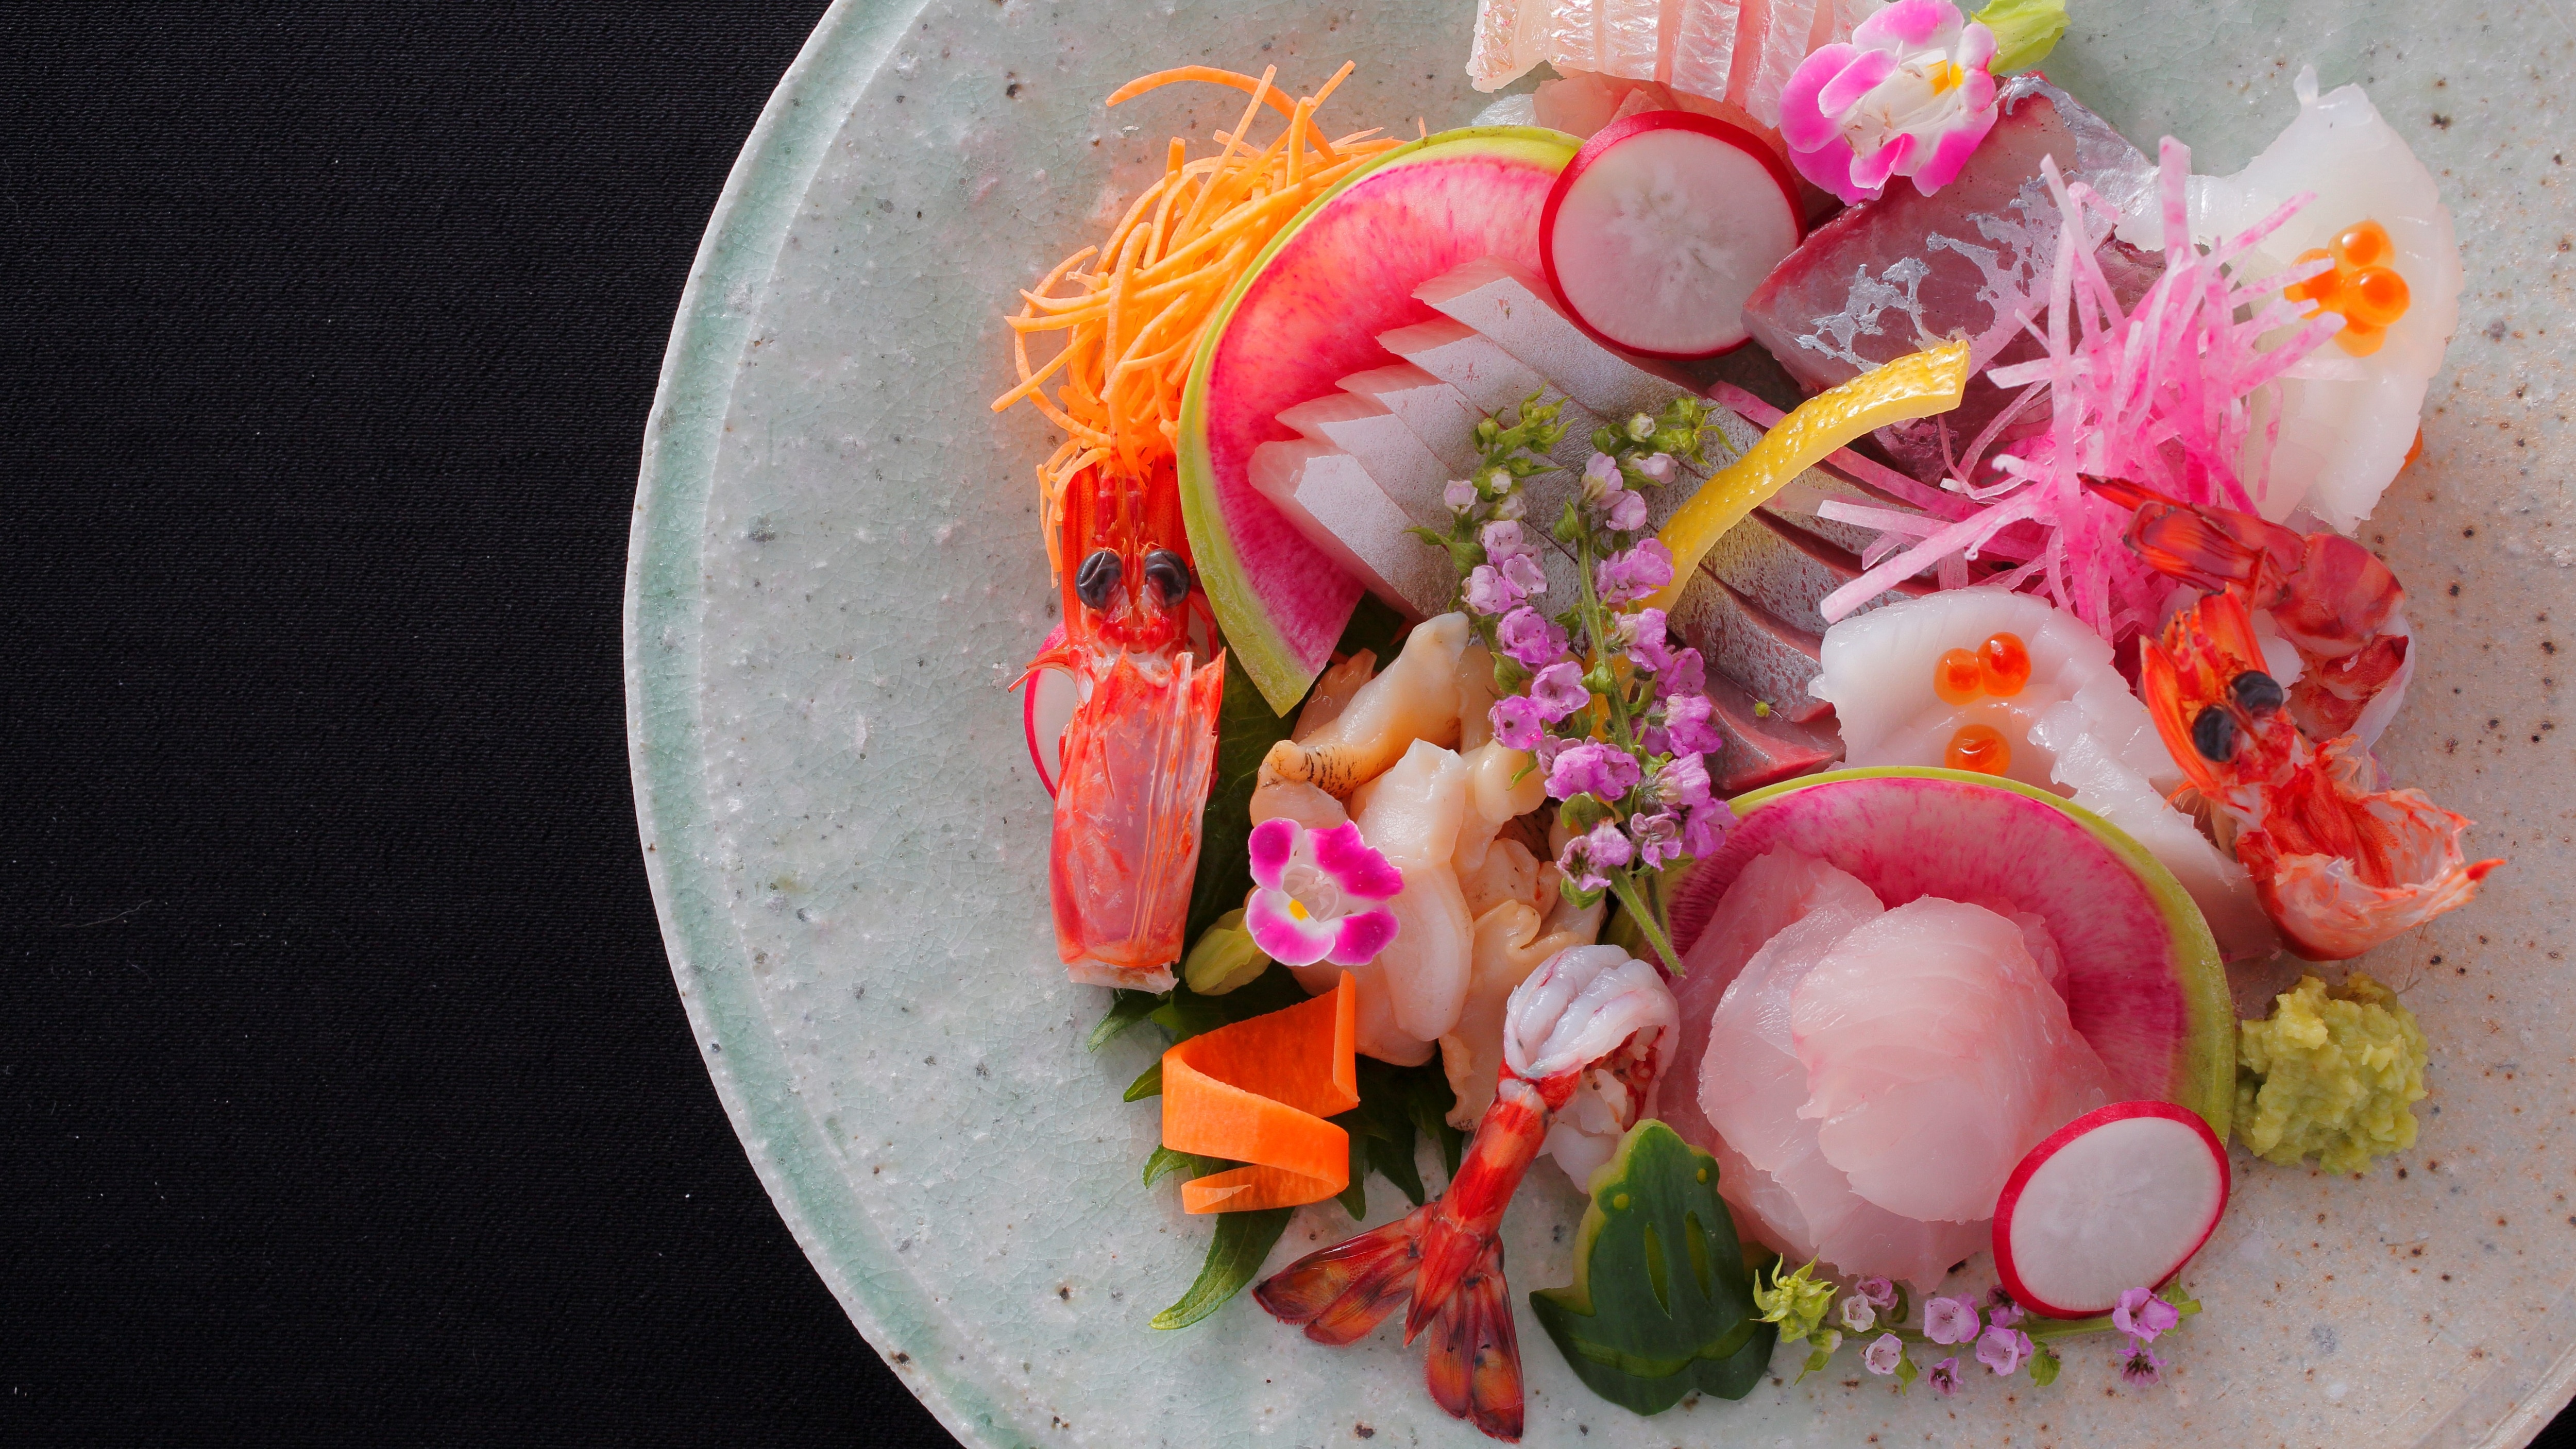 [Sashimi] Enjoy the fresh seafood of Tango with sashimi!